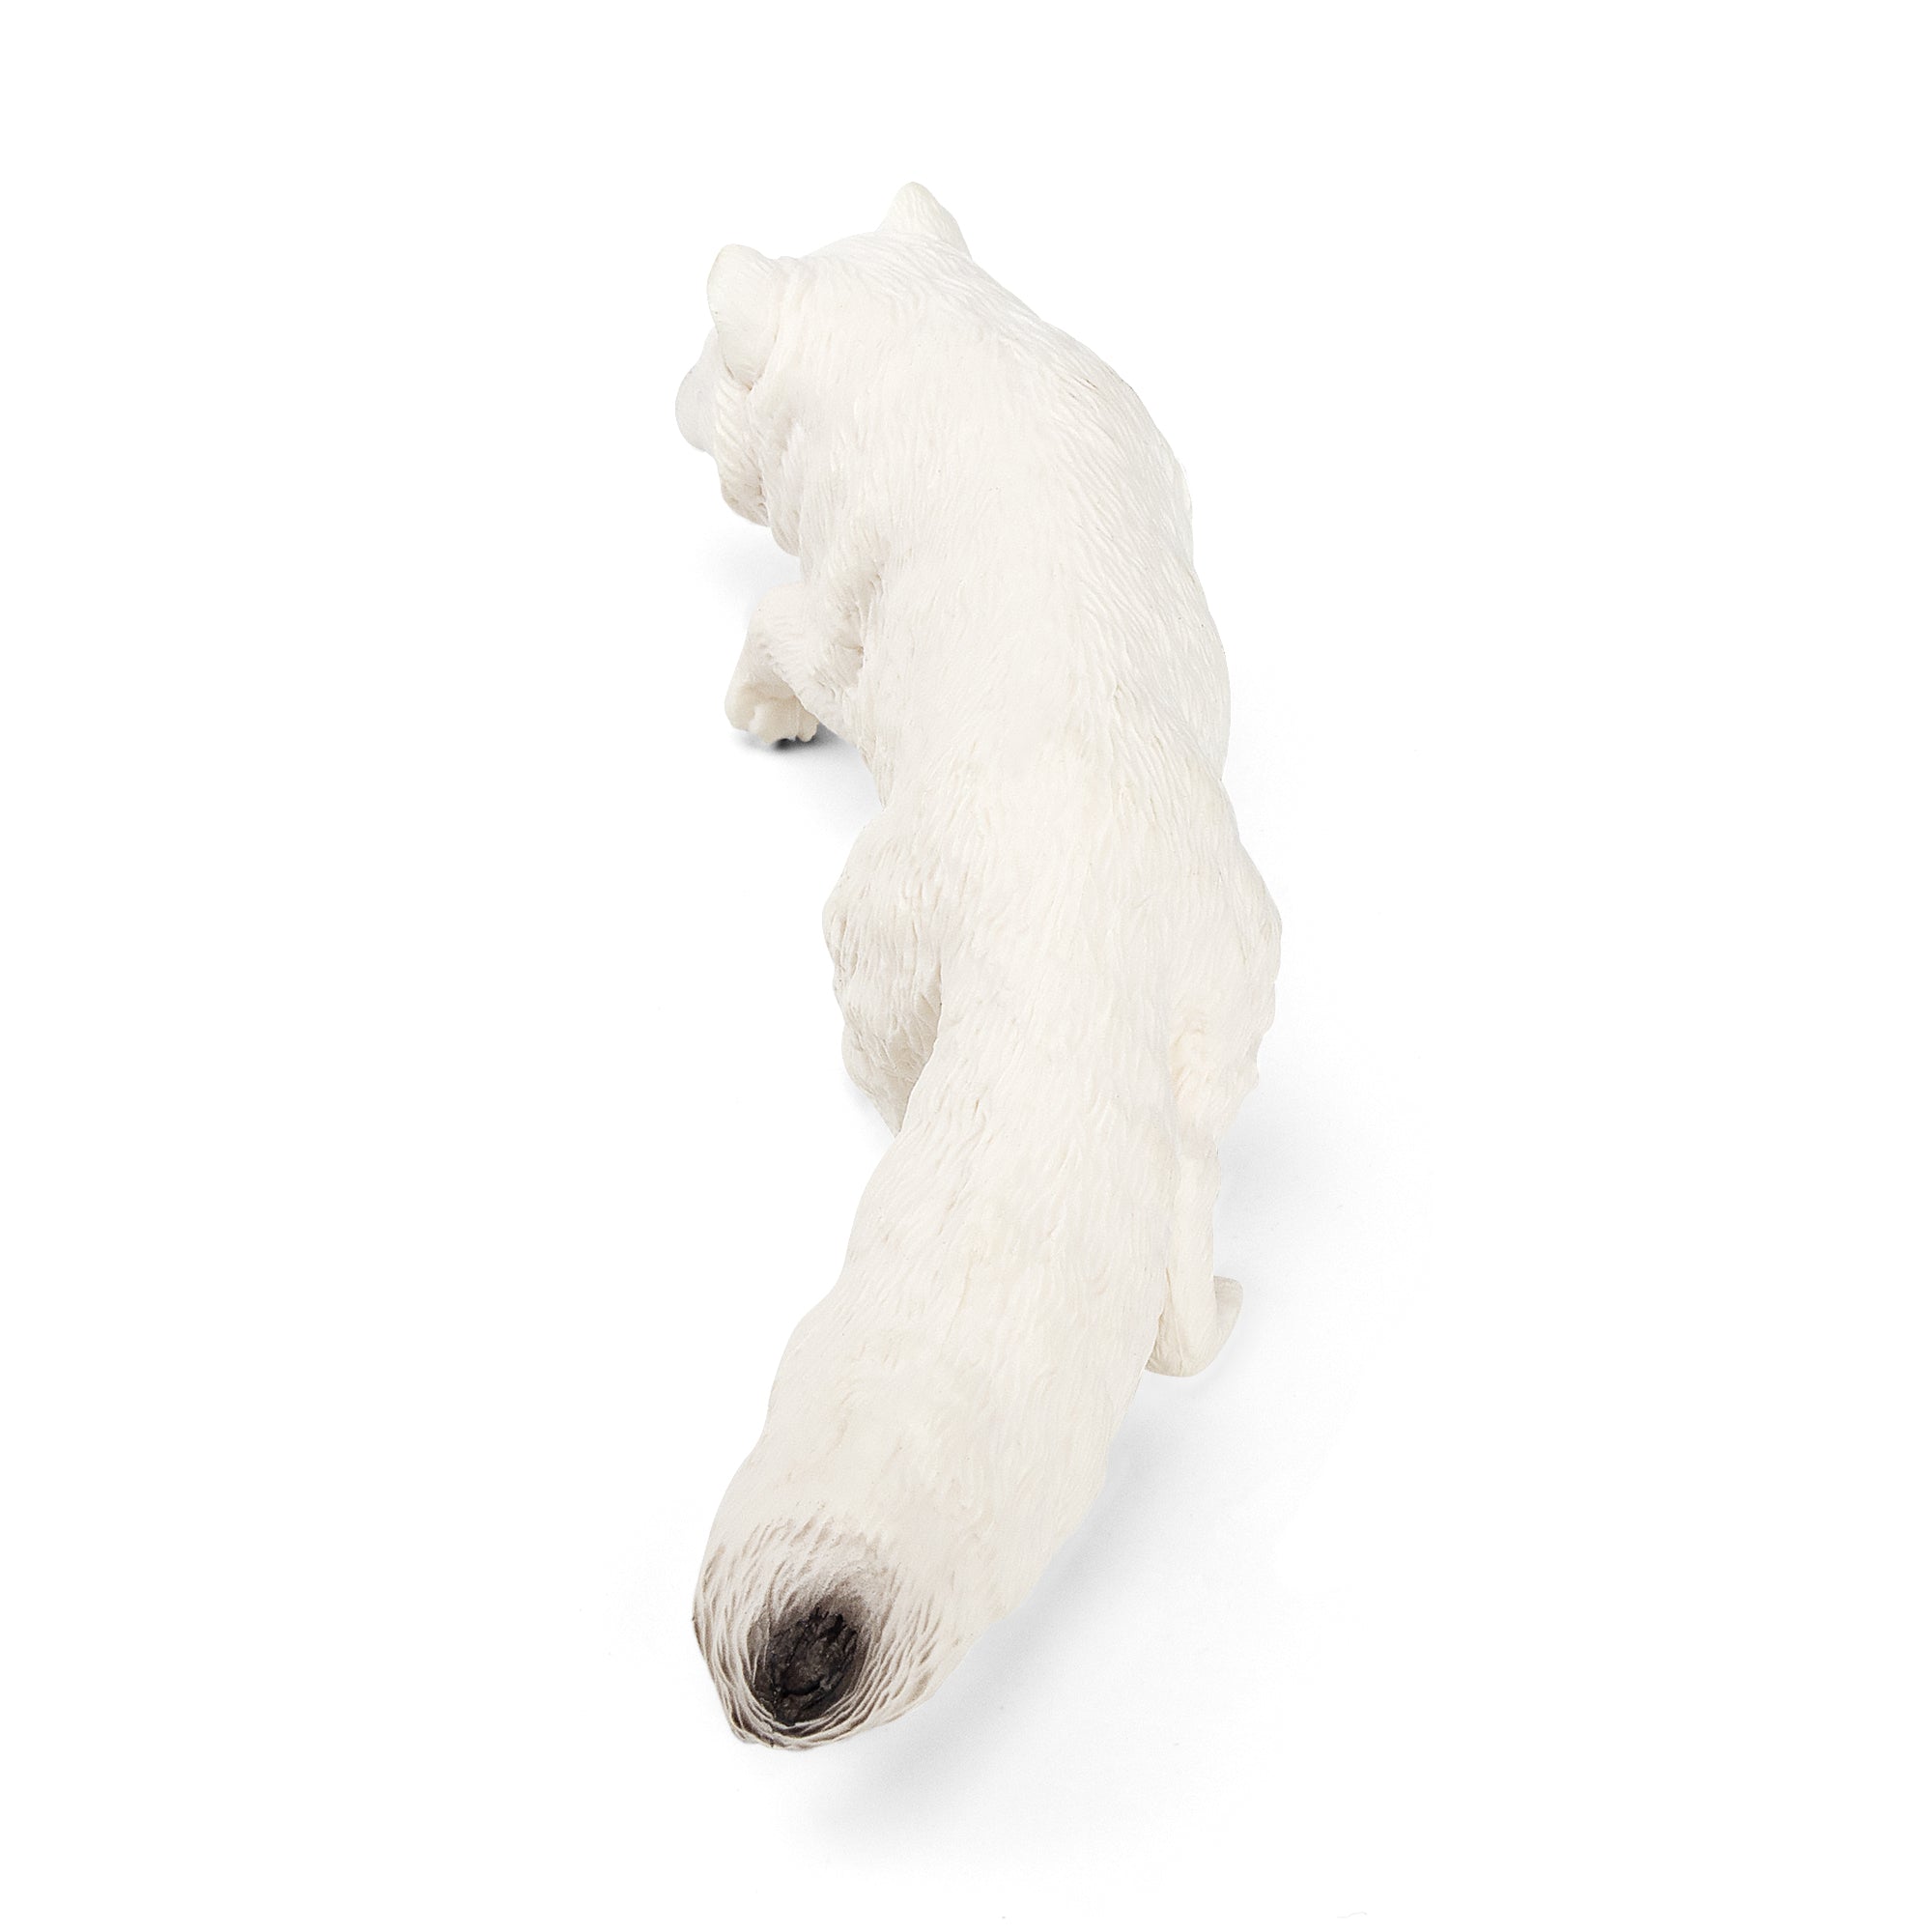 Arctic Fox Figurine Toy-top